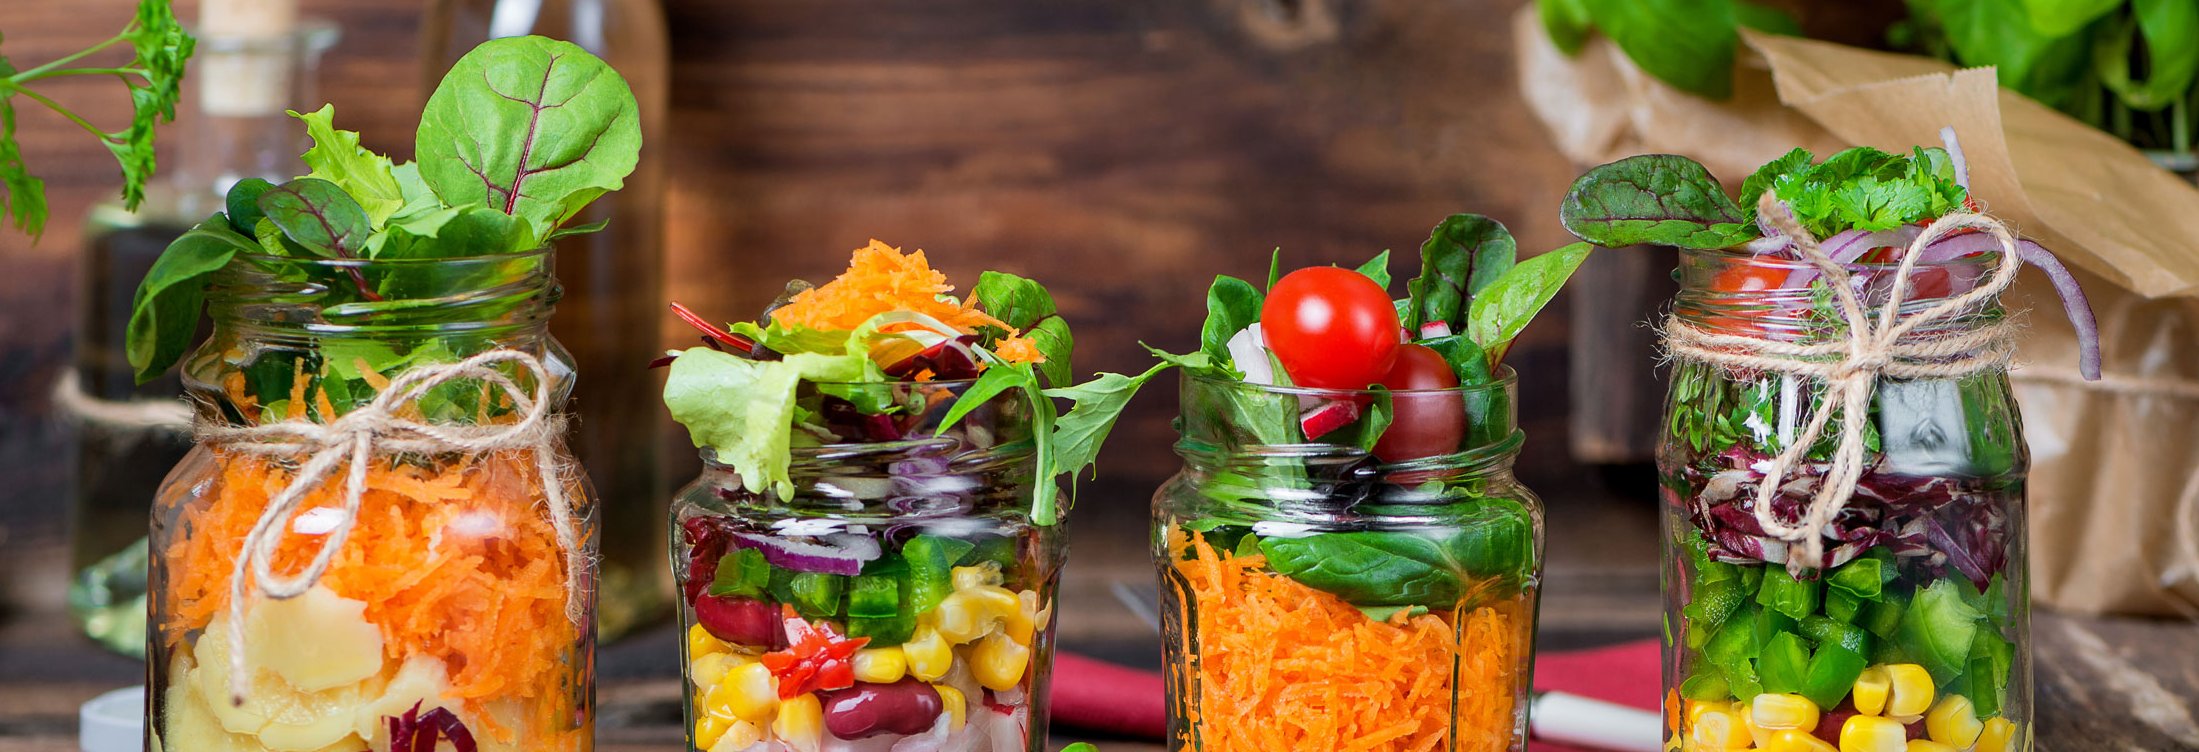 Auswahl von verschiedenen Salaten im Glas